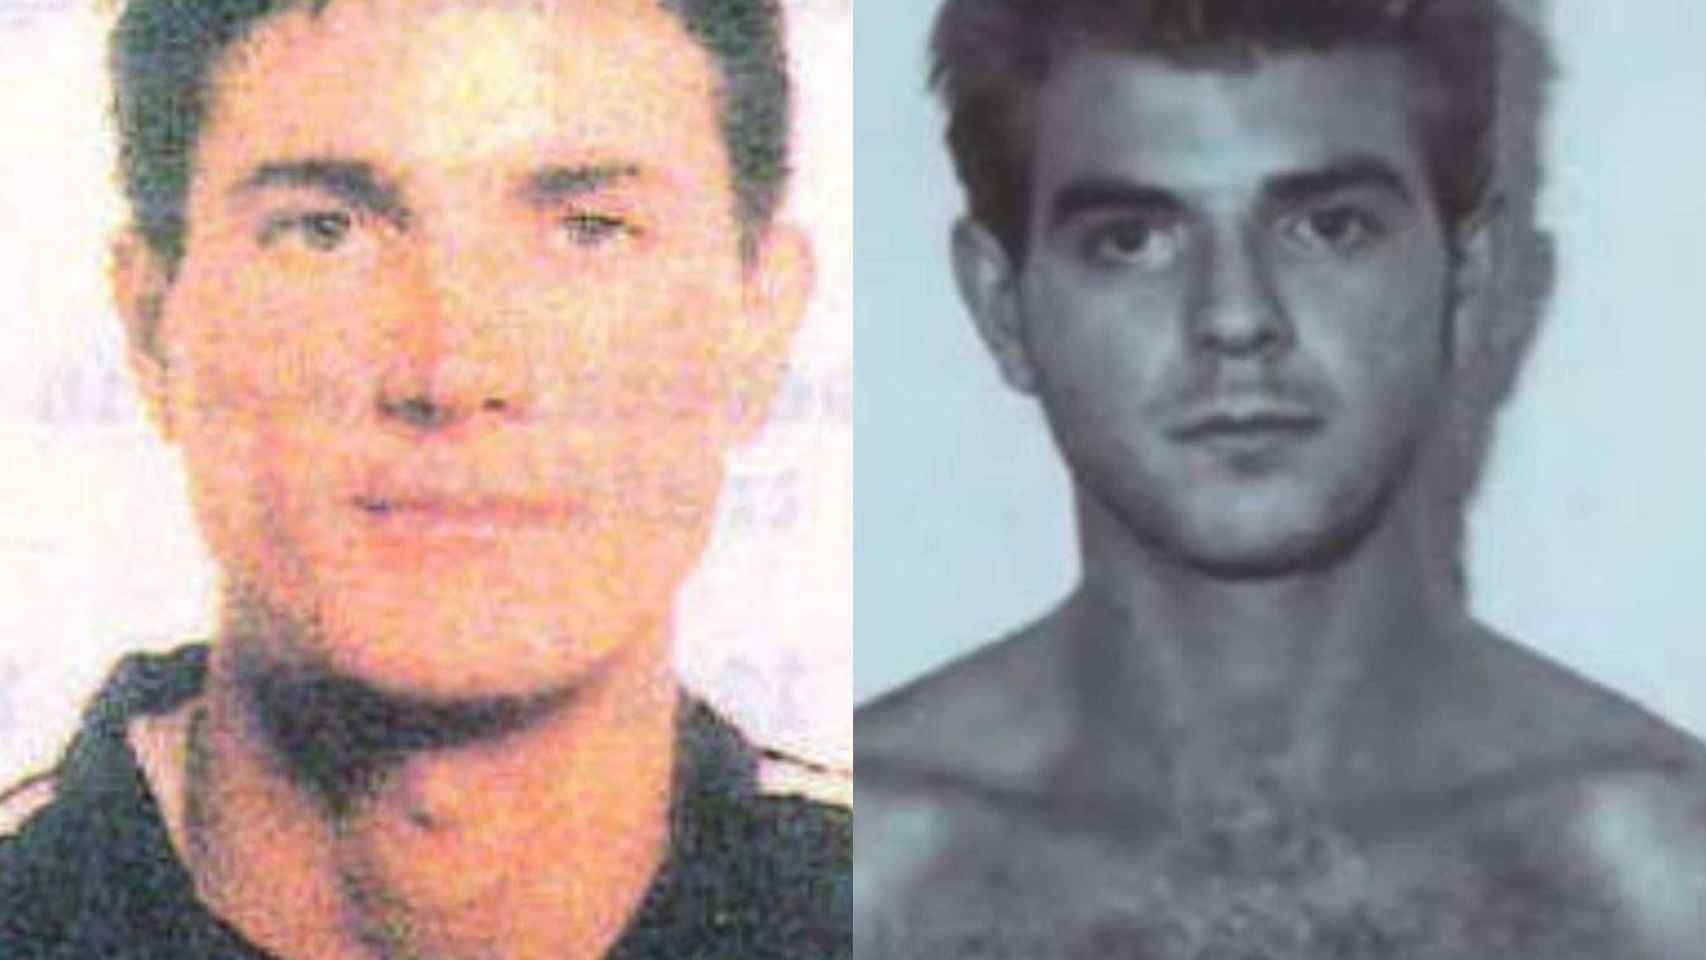 Retratos de Antonio Anglés, investigado en los crímenes de Alcàsser / INTERPOL